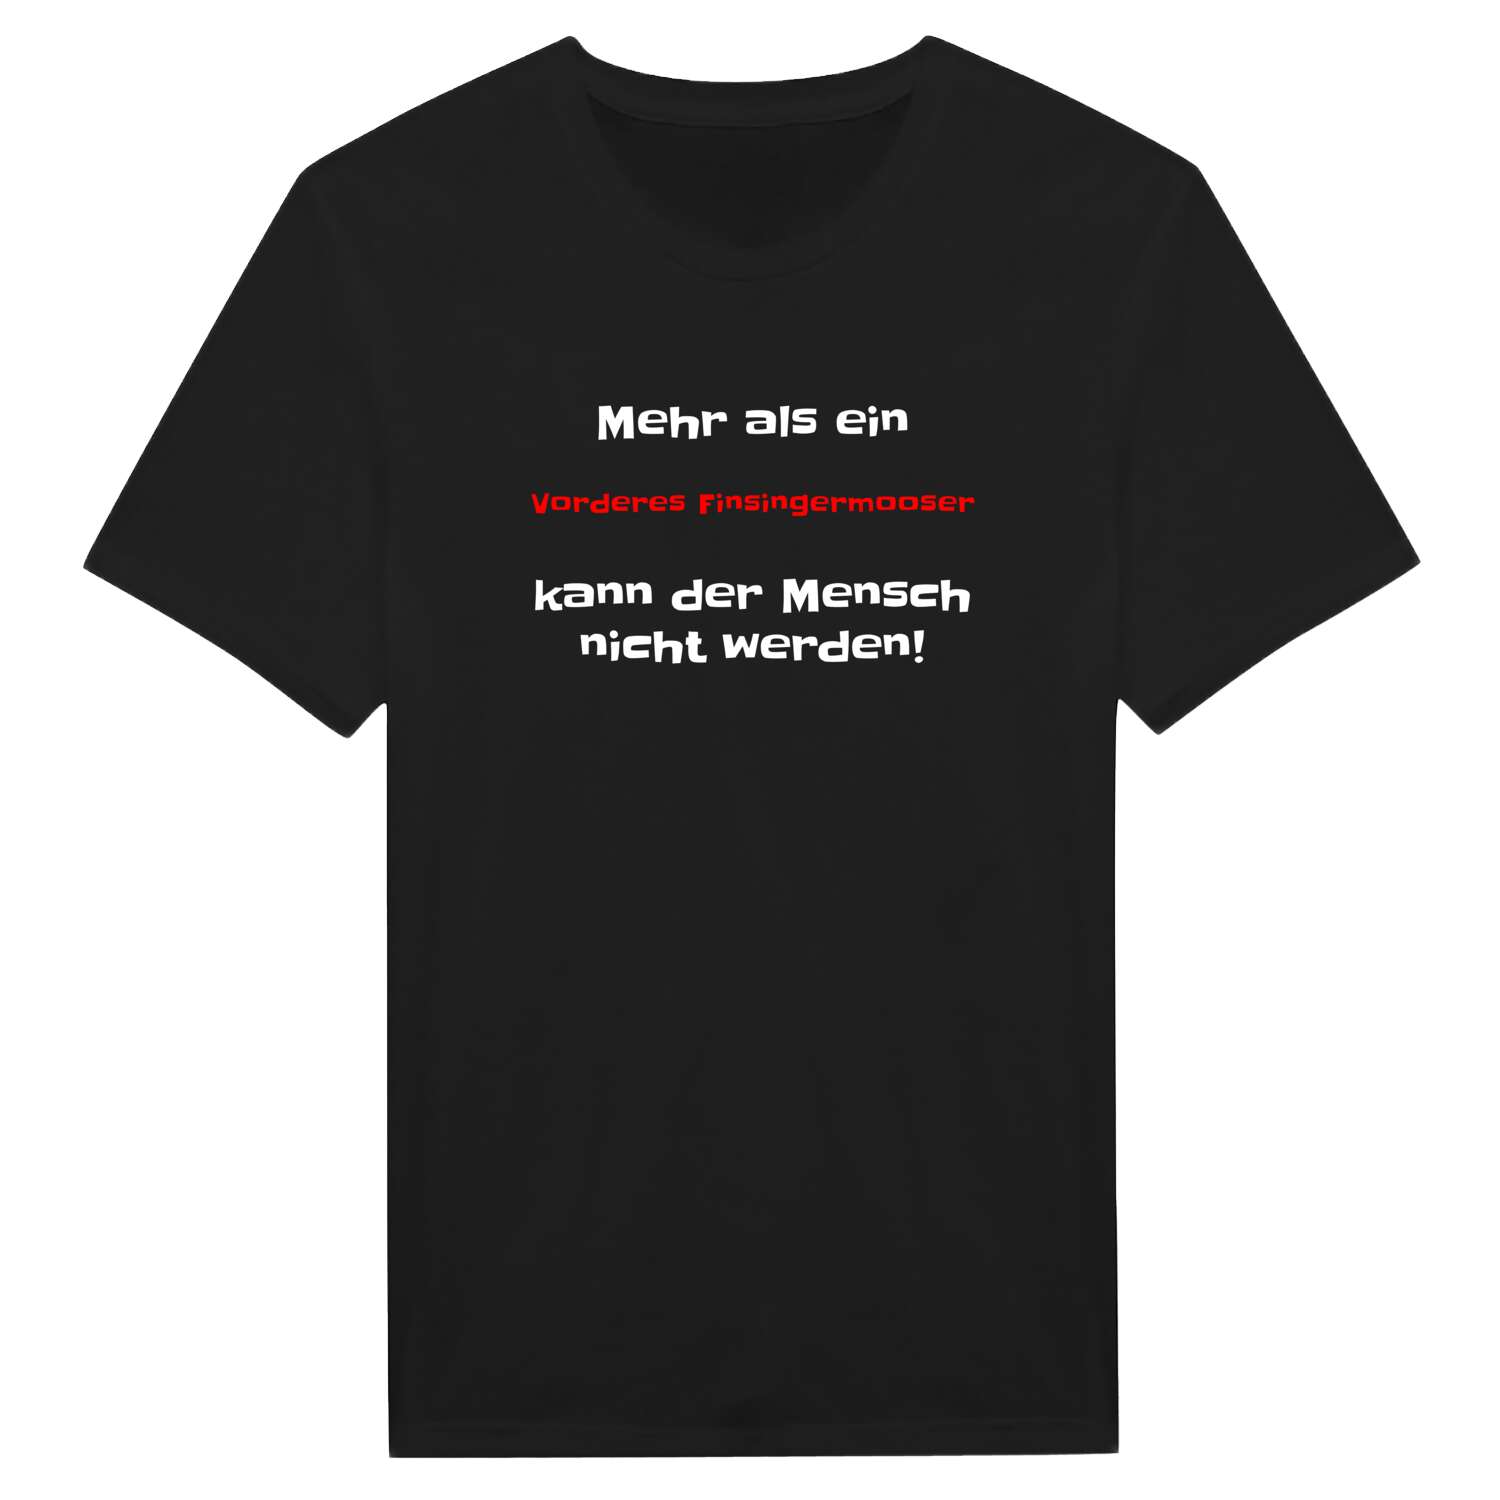 Vorderes Finsingermoos T-Shirt »Mehr als ein«